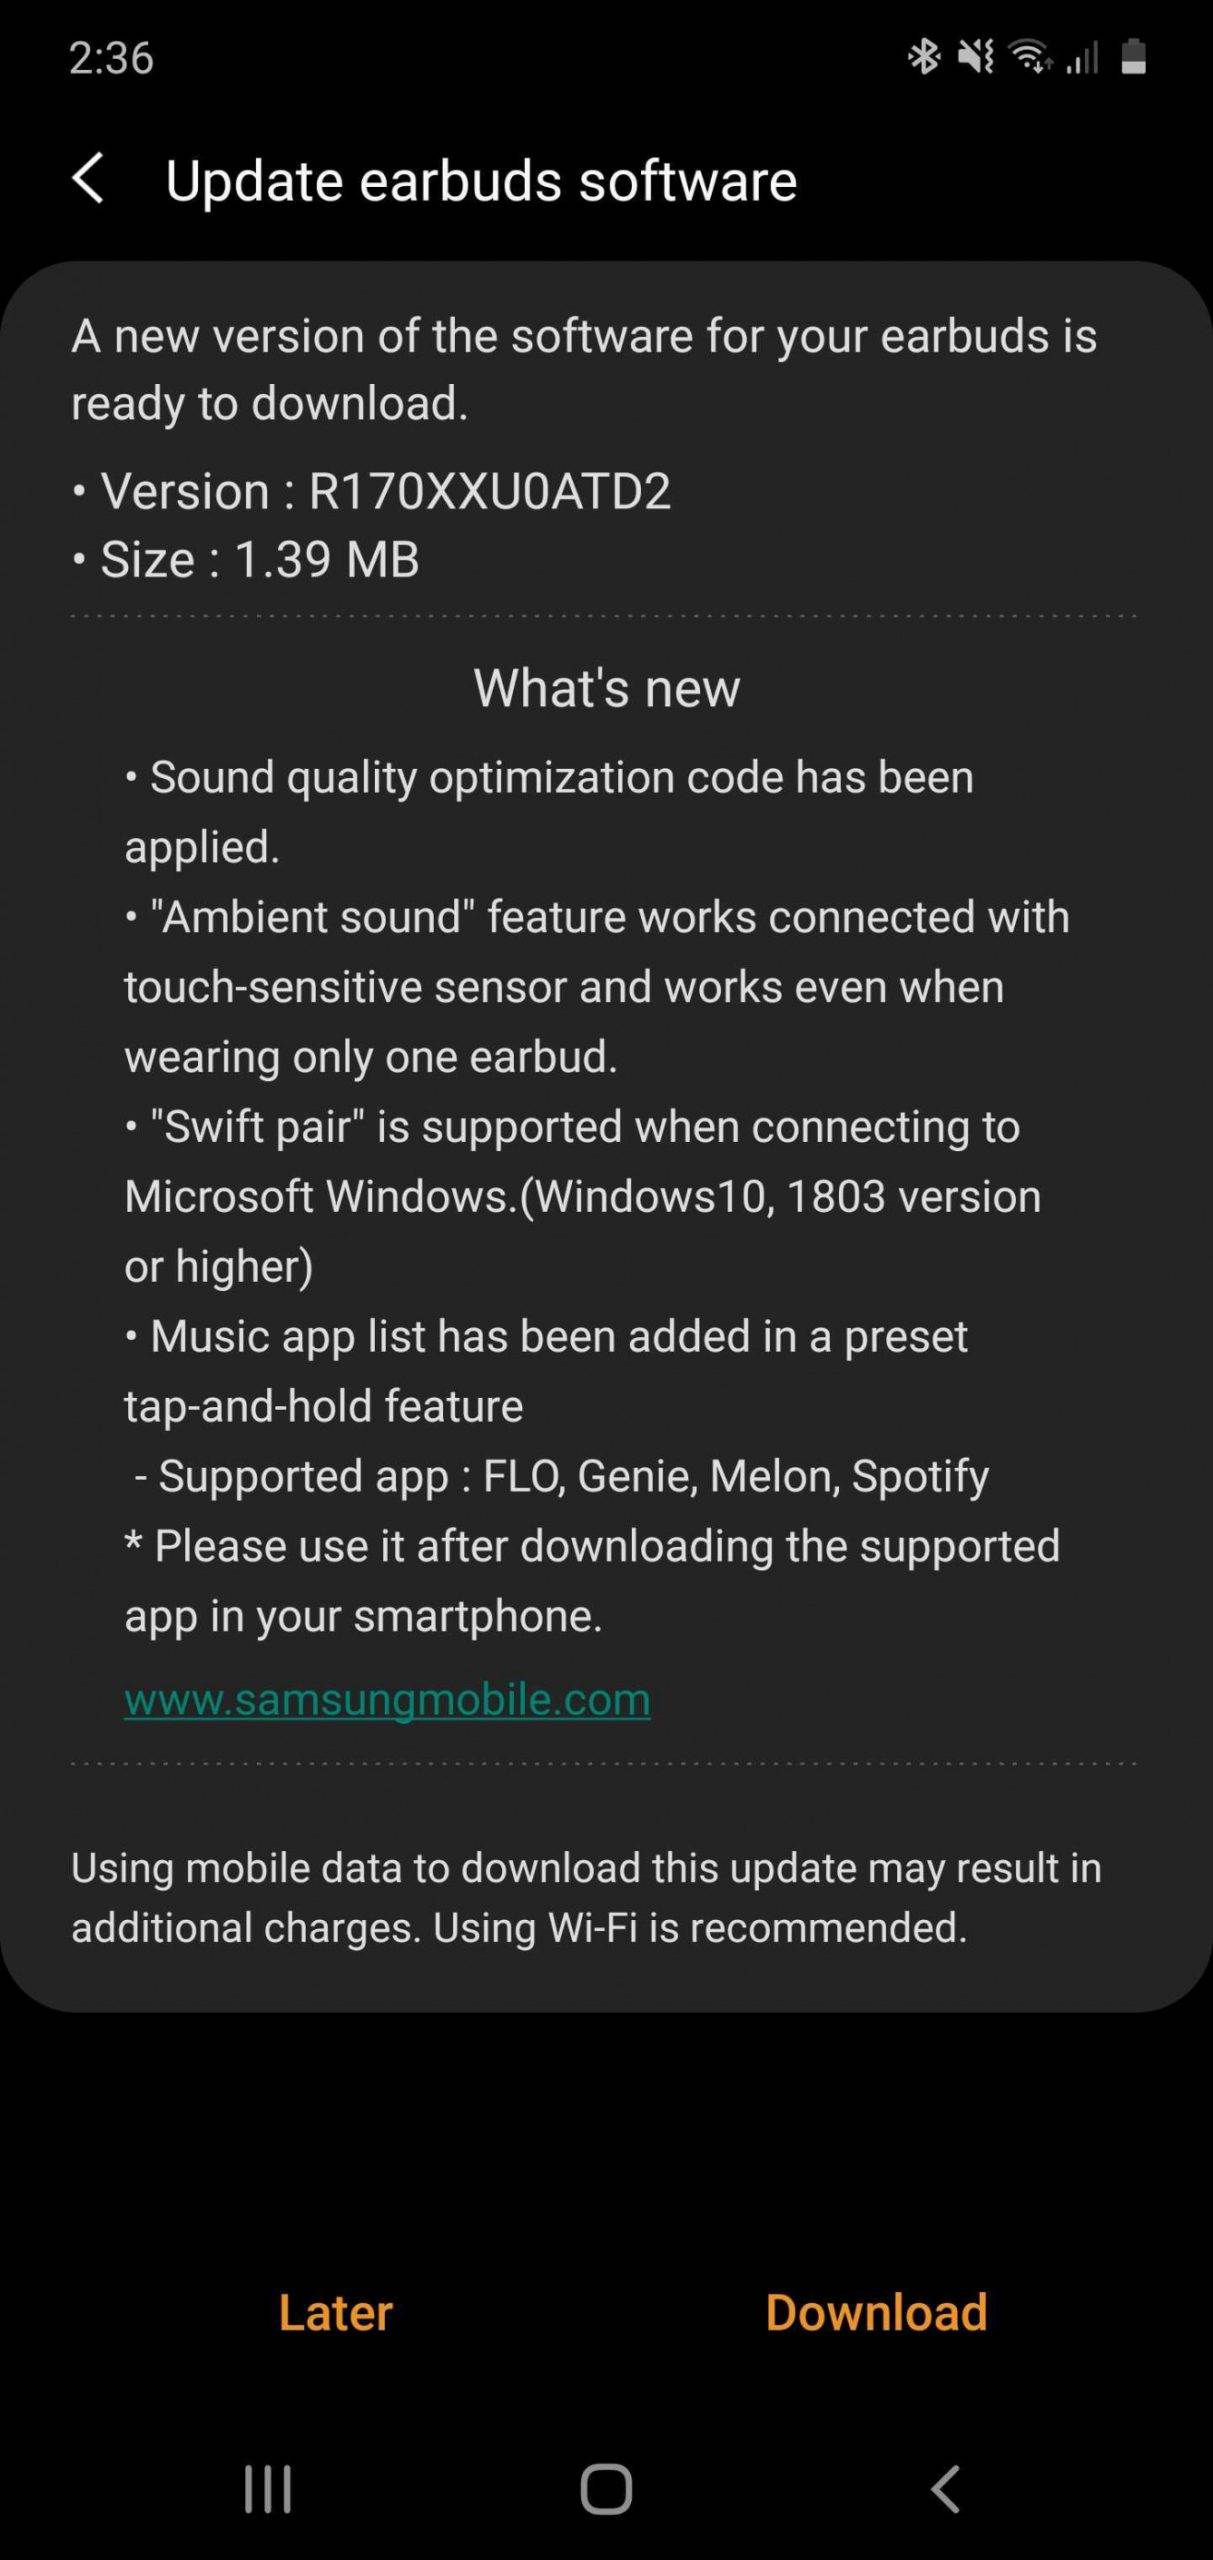 Samsung wydał nowe oprogramowanie dla słuchawek Galaxy Buds polecane, ciekawostki Update, słuchawki, Samsung, R170XXU0ATD, Galaxy Buds  Samsung wydał aktualizację oprogramowania bezprzewodowych słuchawek Galaxy Buds. Nowa wersja oprogramowania posiada kilka nowych funkcji. galaxy buds update buds plus features scaled